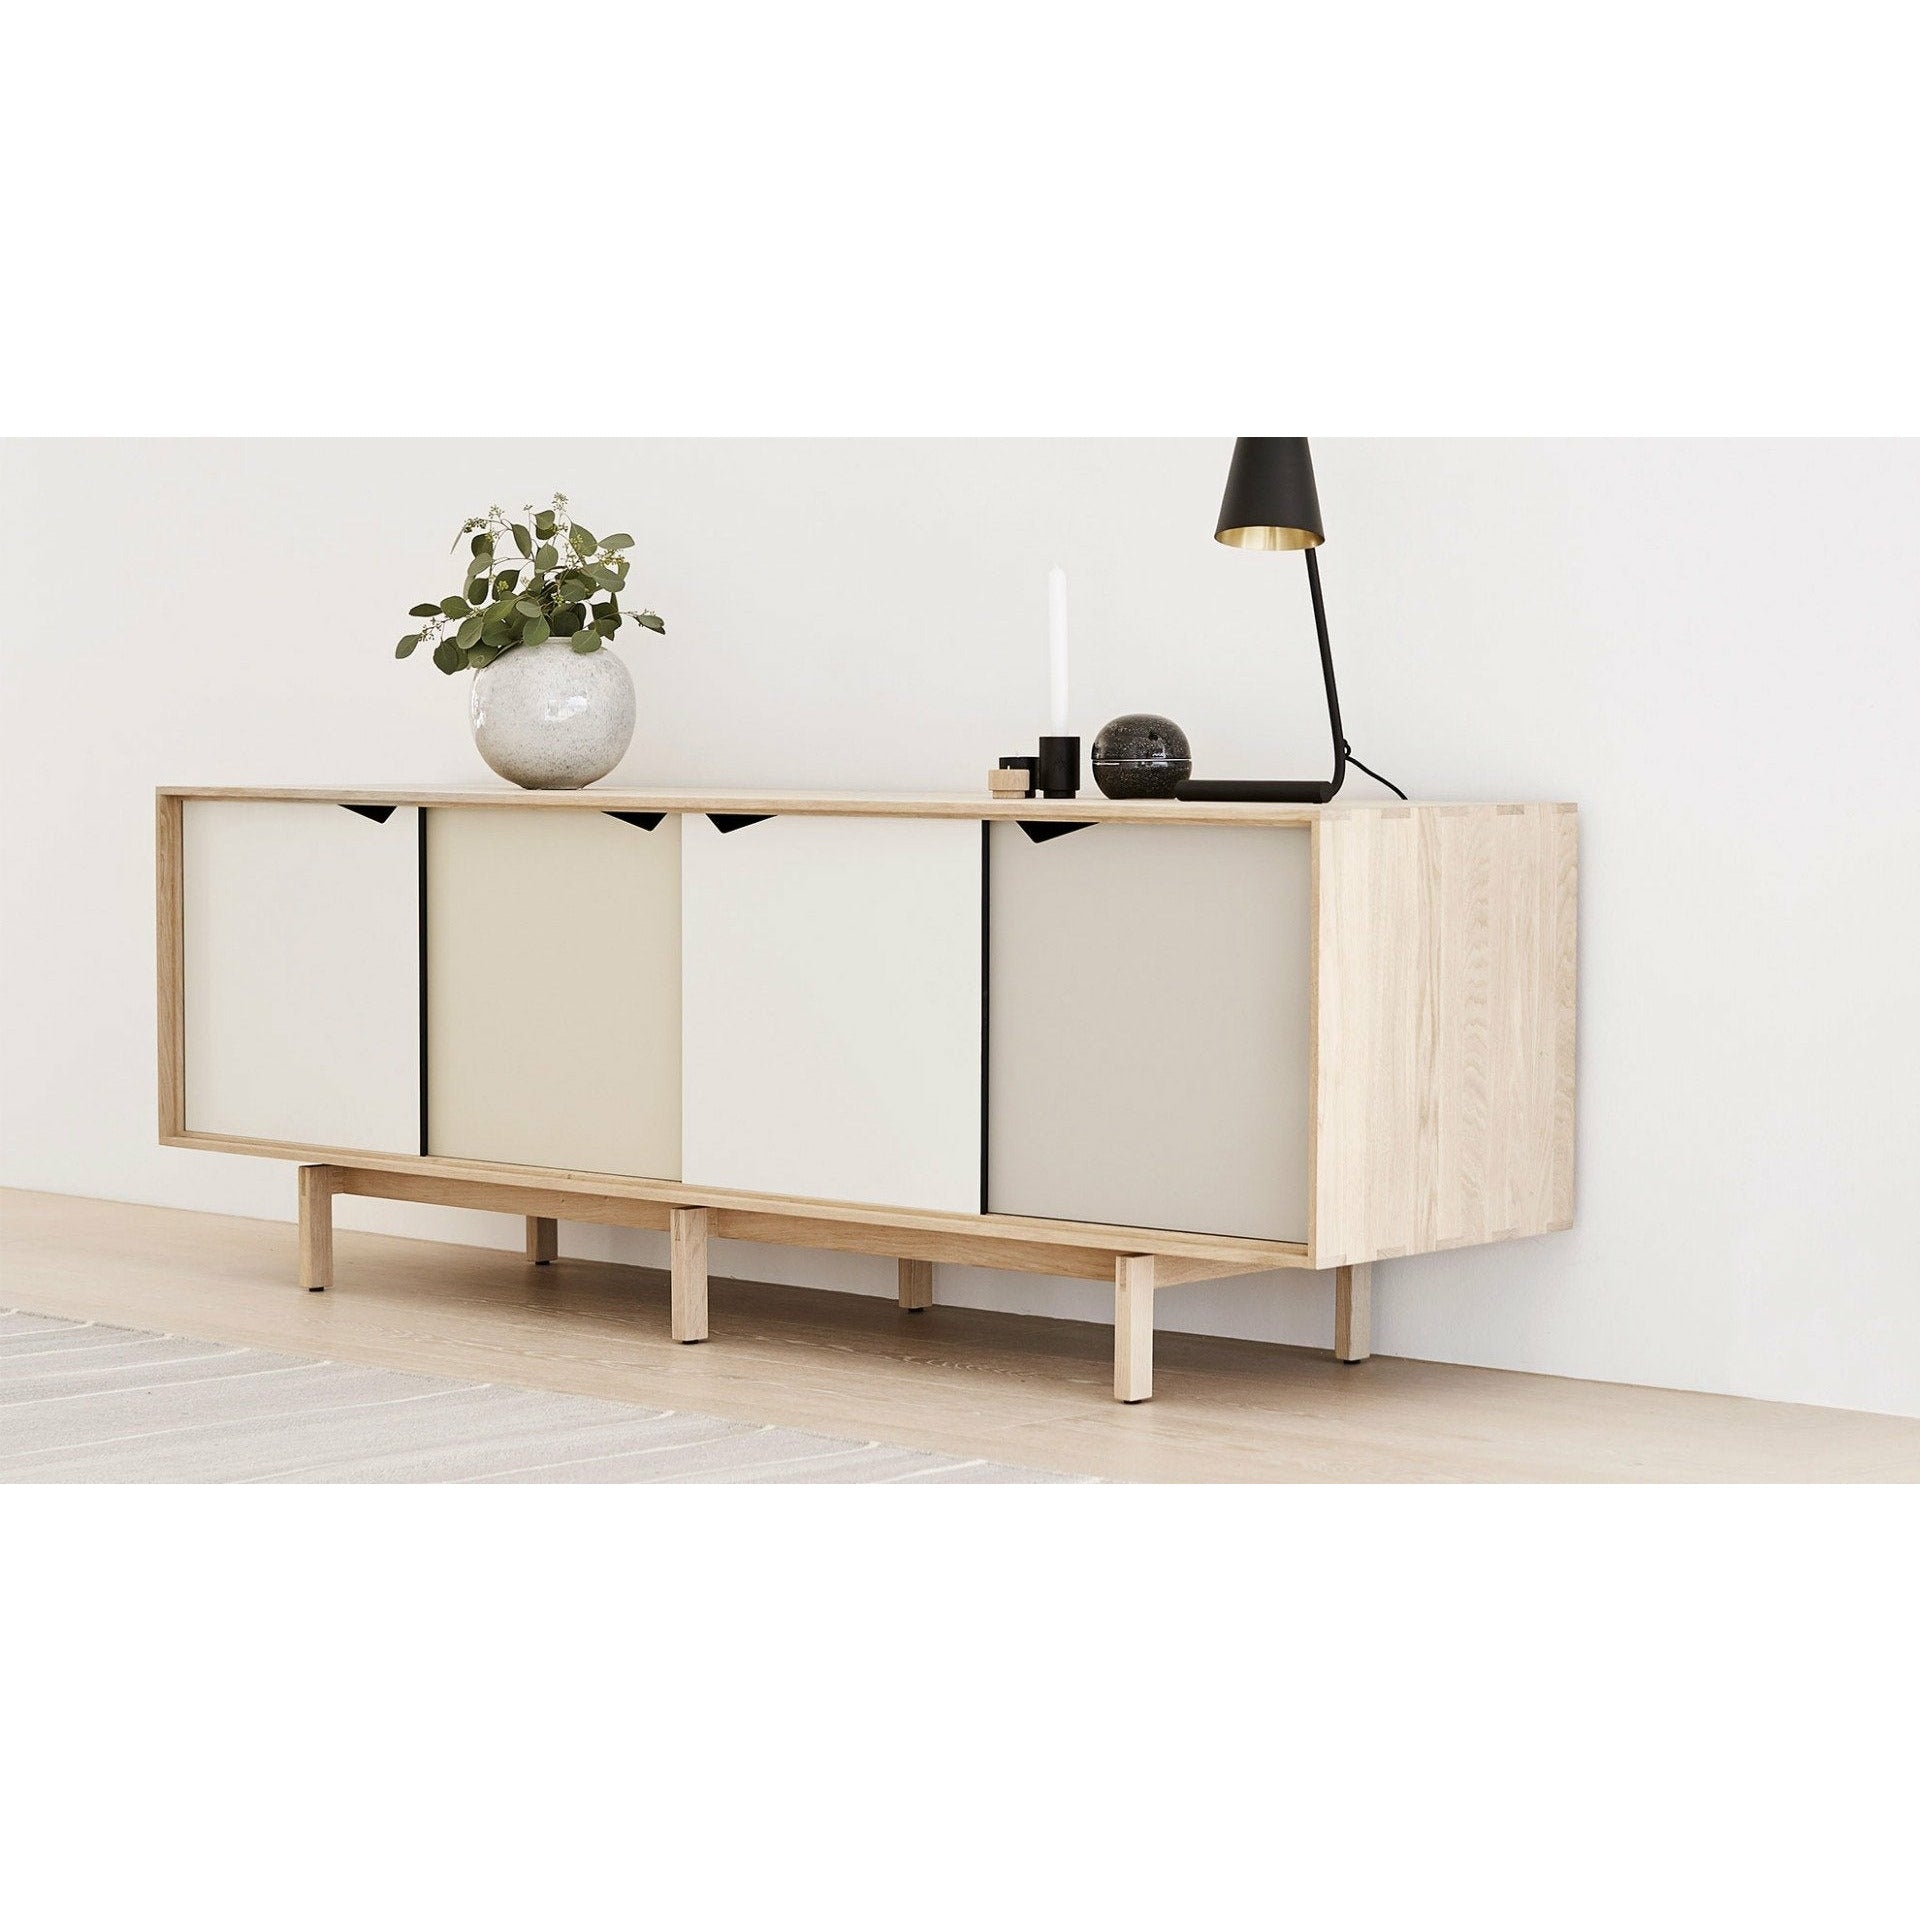 Andersen Furniture S1 skænkesæbe eg, hvide skuffer, 200 cm